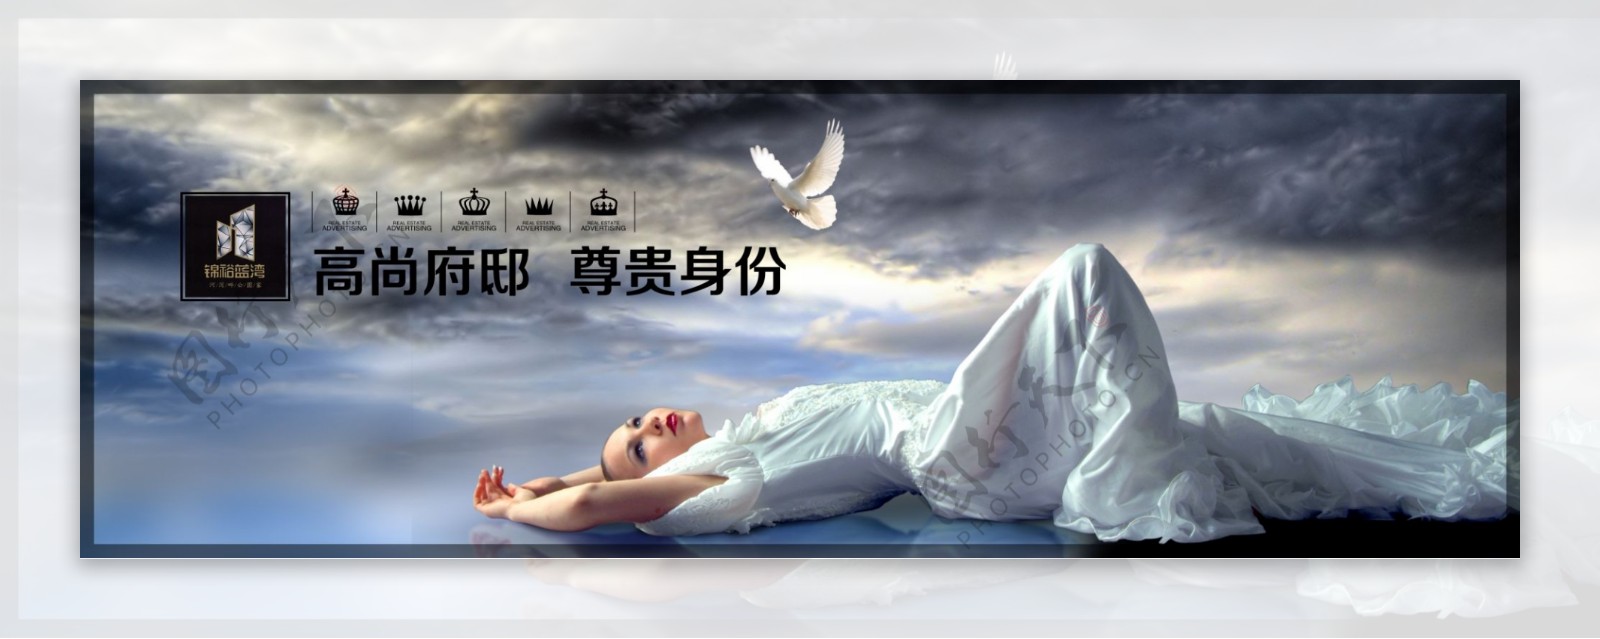 睡美人围墙广告图片